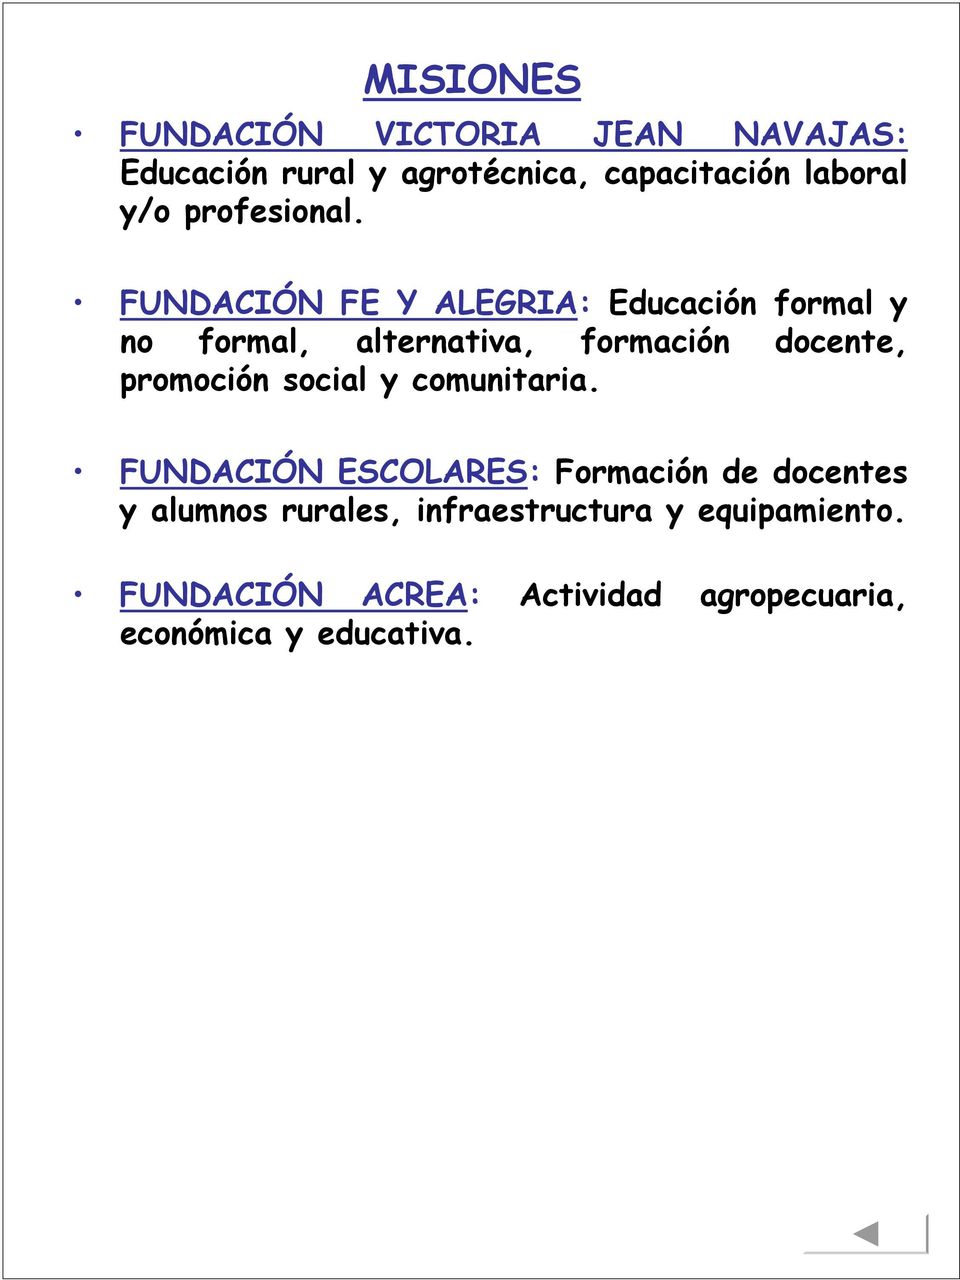 FUNDACIÓN FE Y ALEGRIA: Educación formal y no formal, alternativa, formación docente, promoción